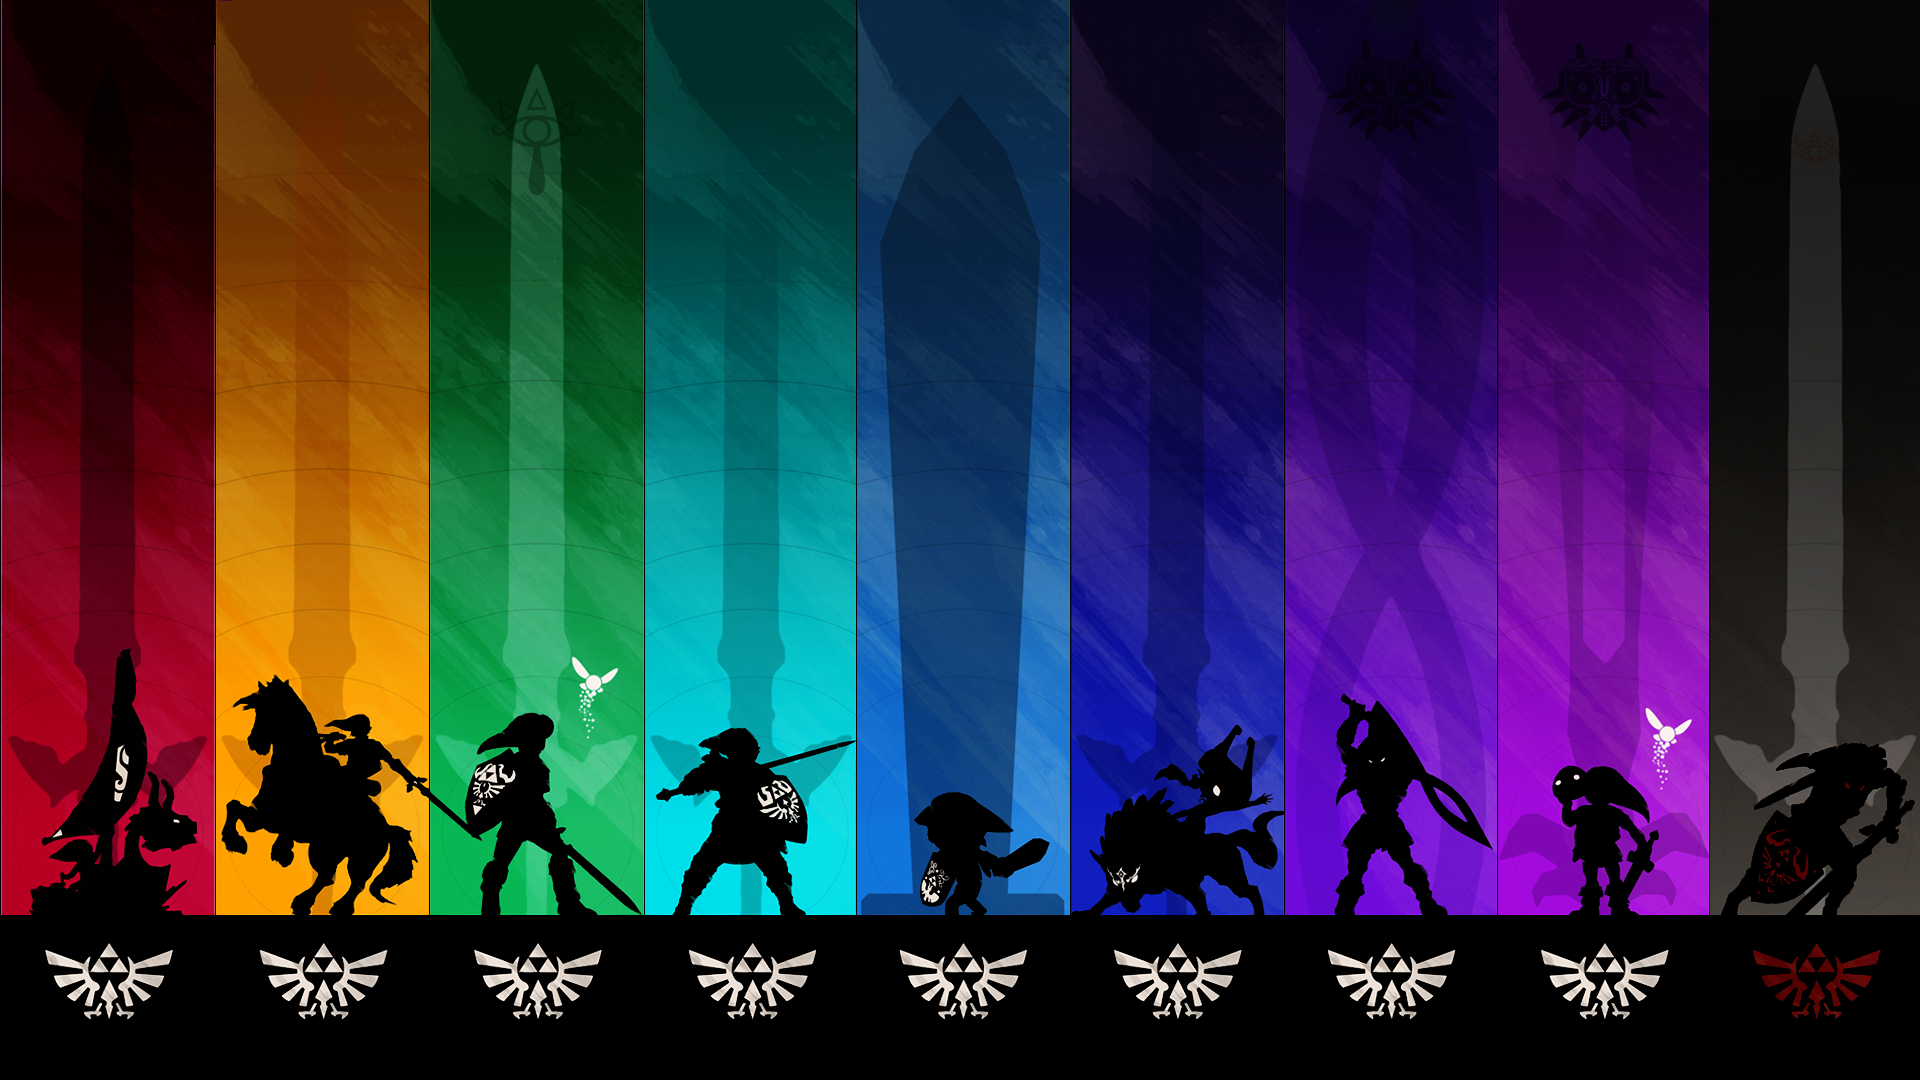 Legend Of Zelda Botw , HD Wallpaper & Backgrounds